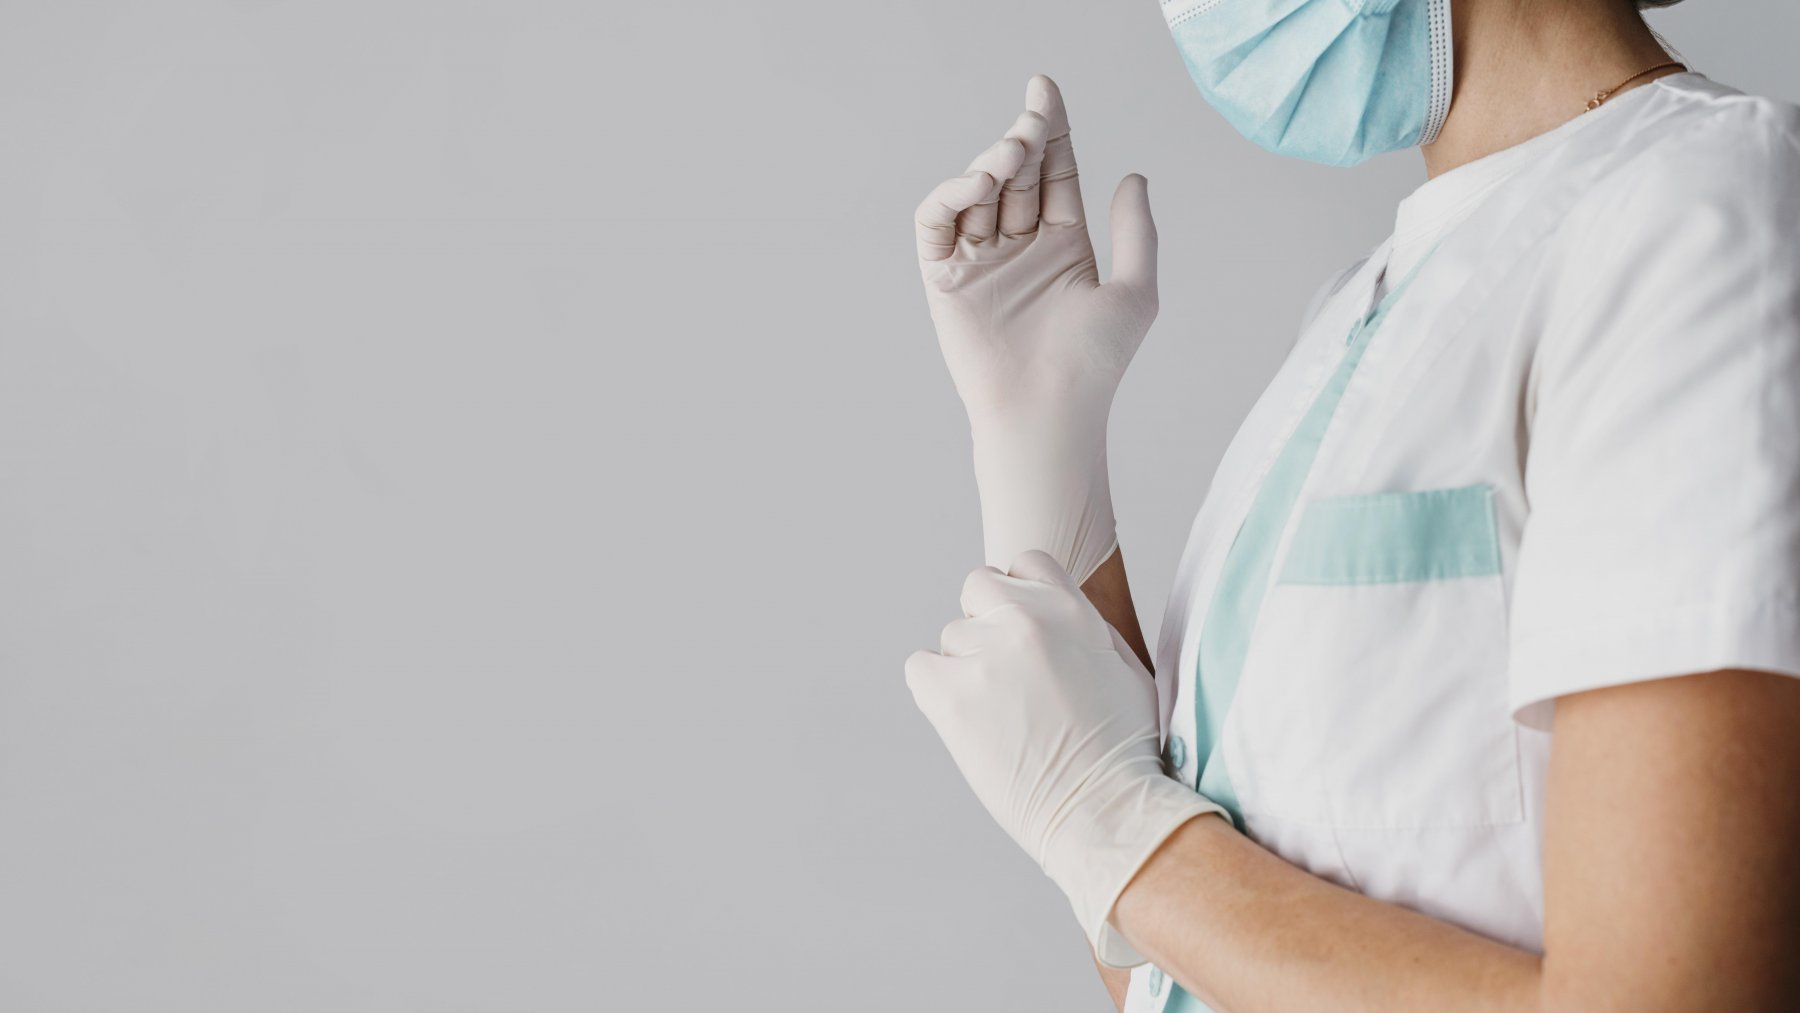 Подмосковные медики извлекли из ноздри 2-летнего ребенка изюм